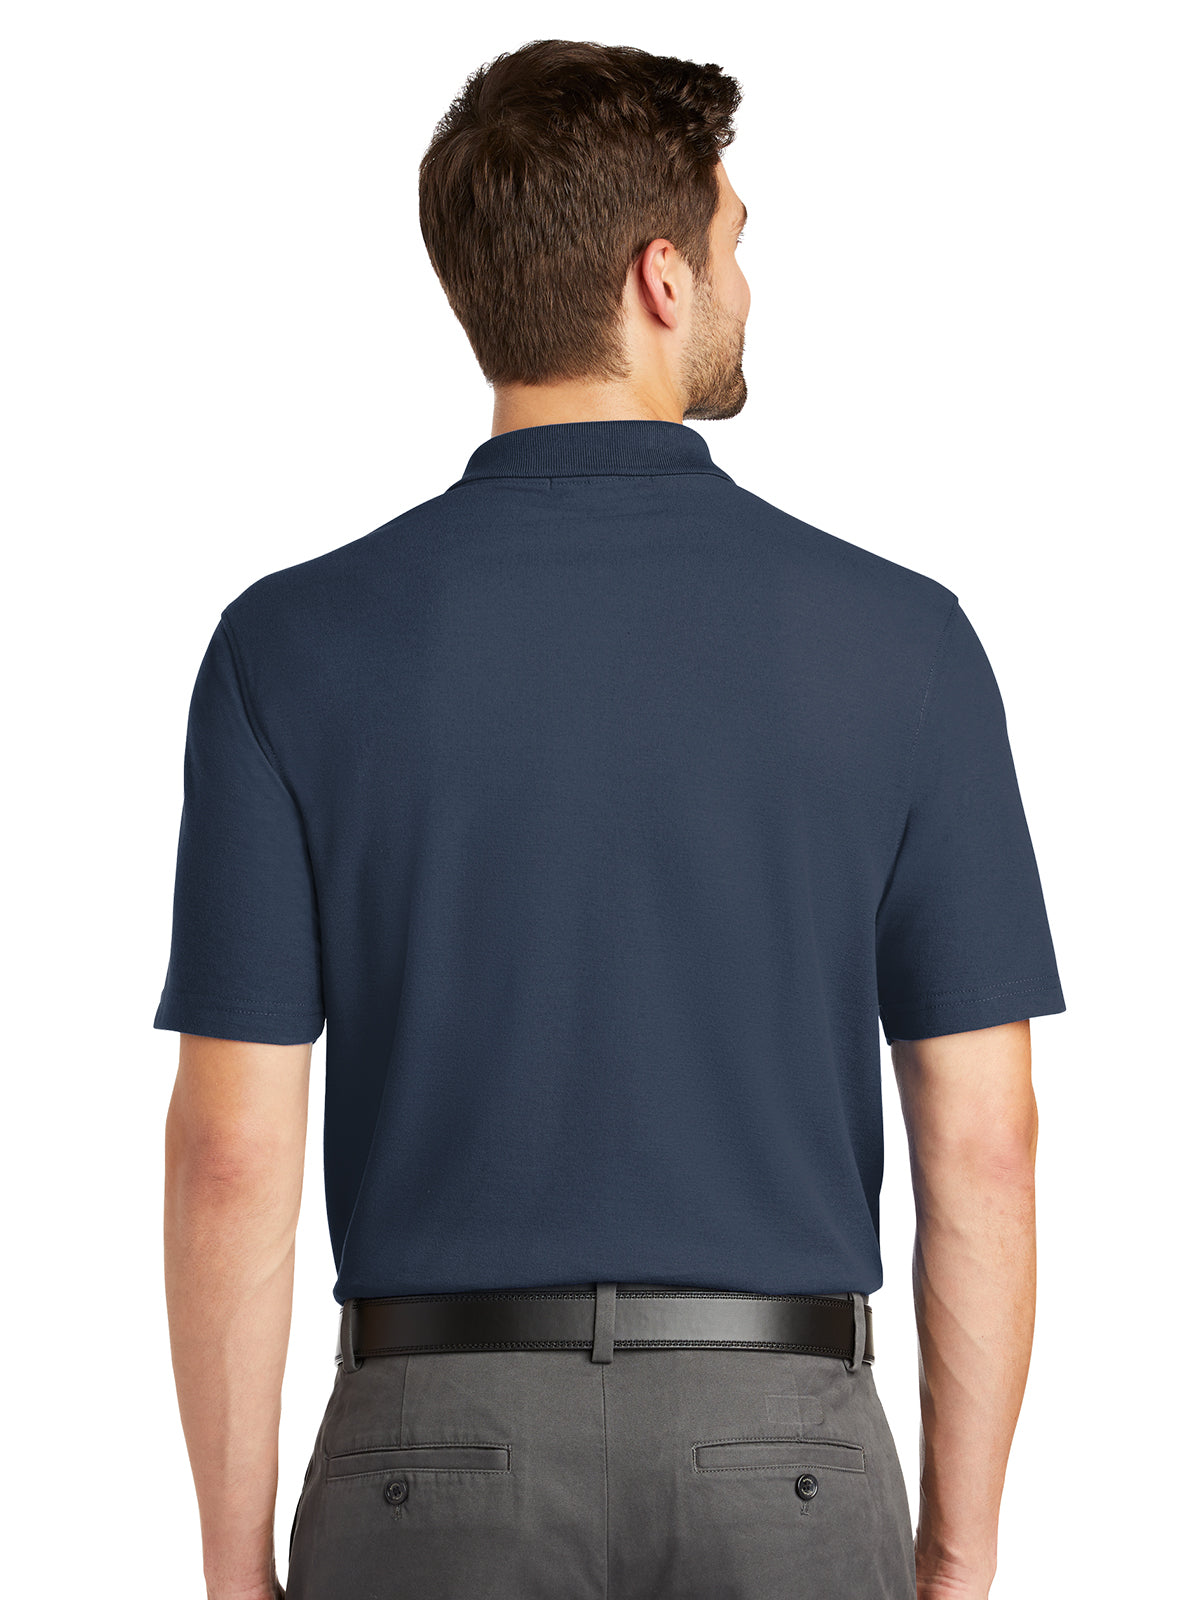 Men's Short Sleeve Polo